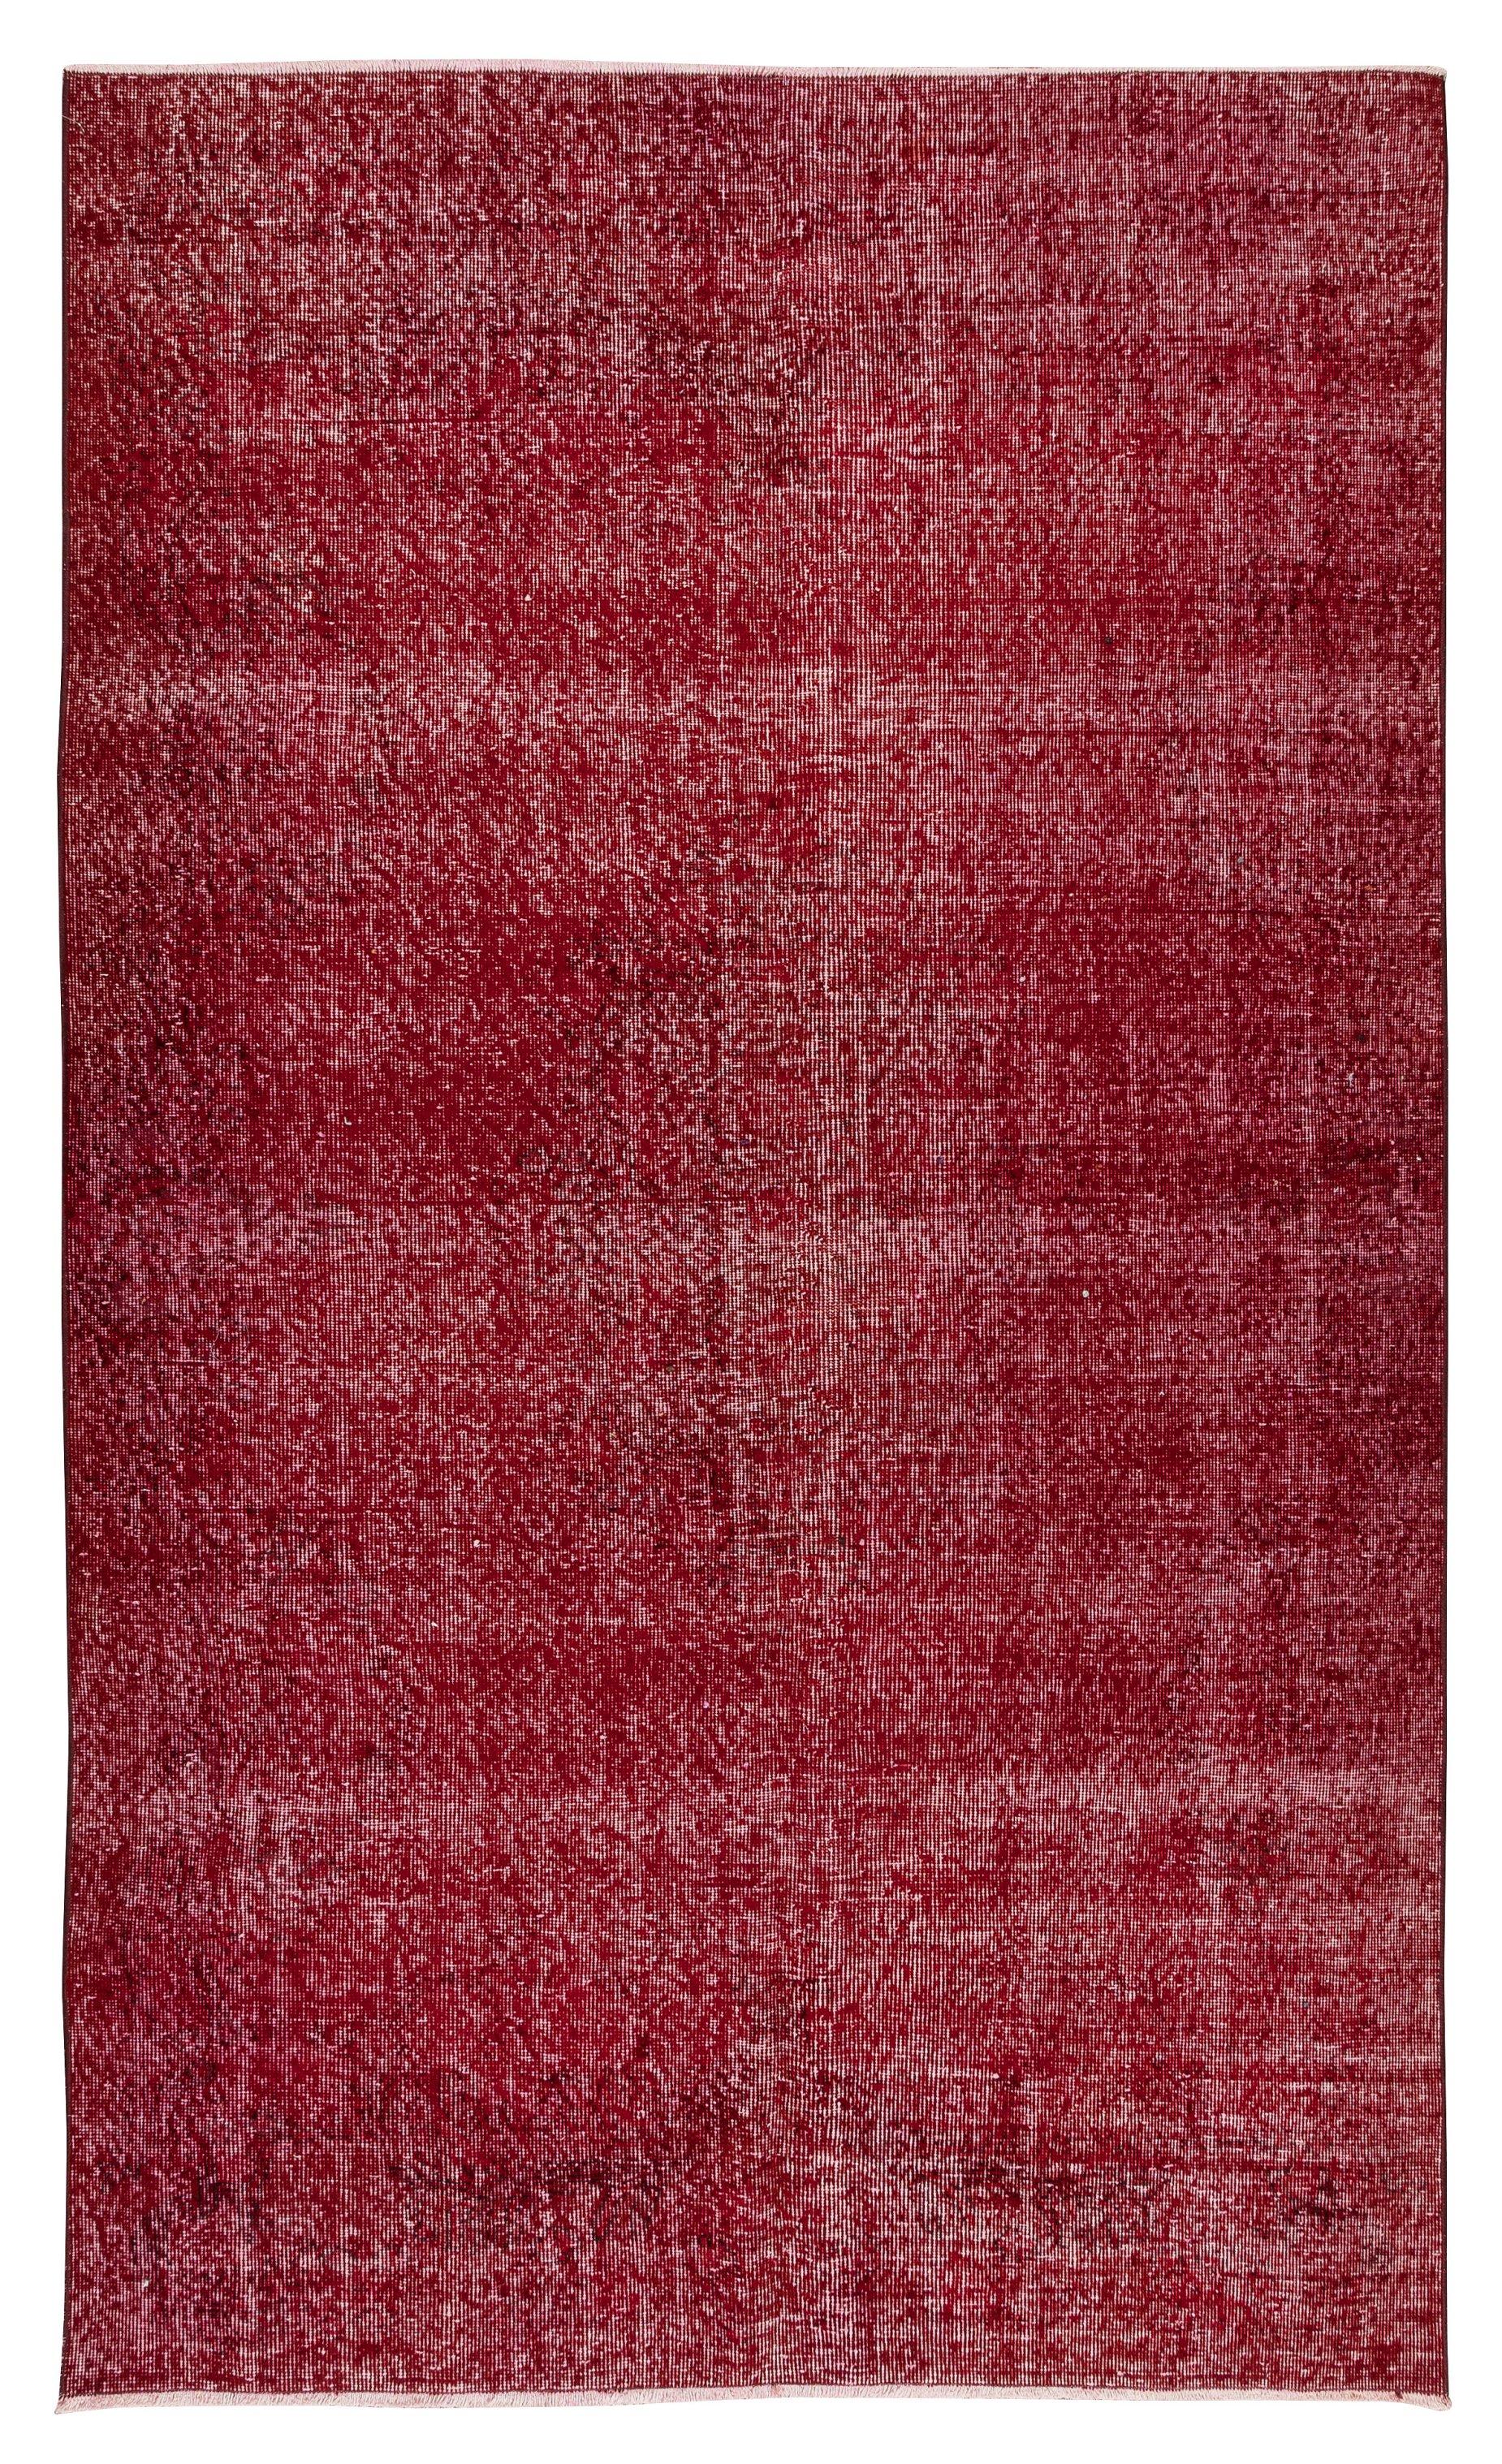 Handgefertigter türkischer Teppich 5.3x9 Ft, moderner, schlichter Teppich aus massivem roter Wolle